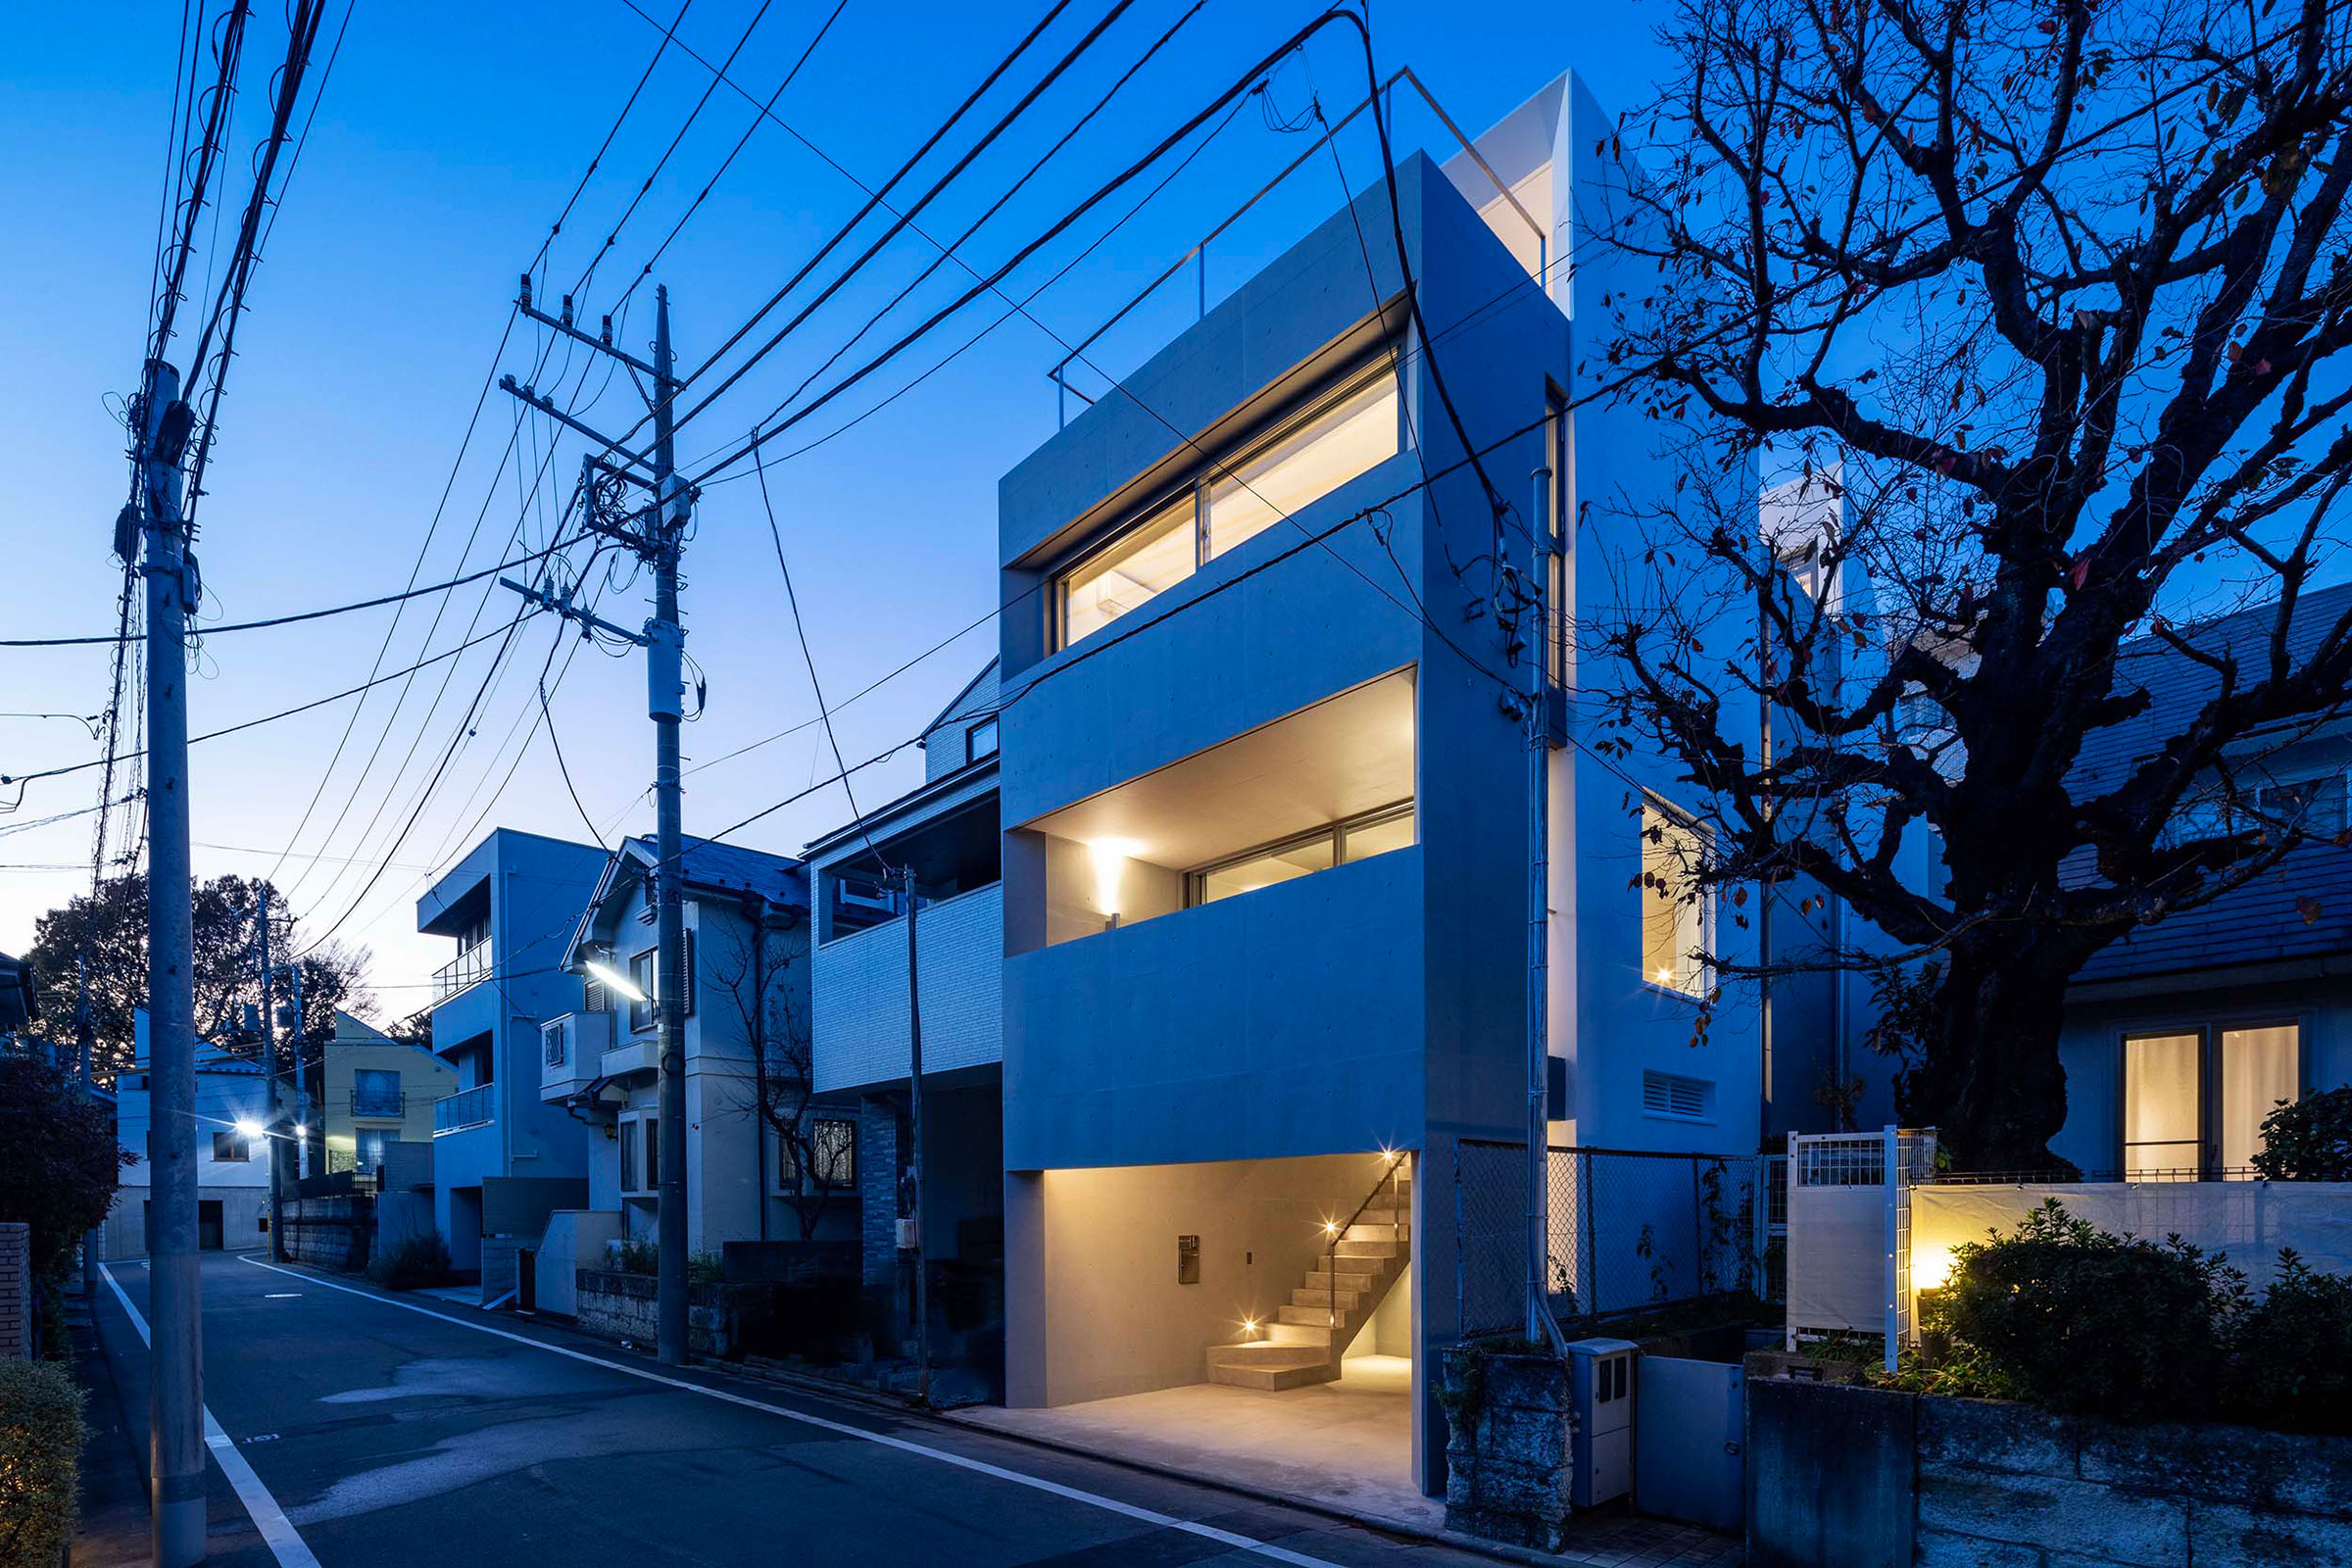 相坂研介設計アトリエによる、東京・世田谷区の「代田の住宅」。間口が